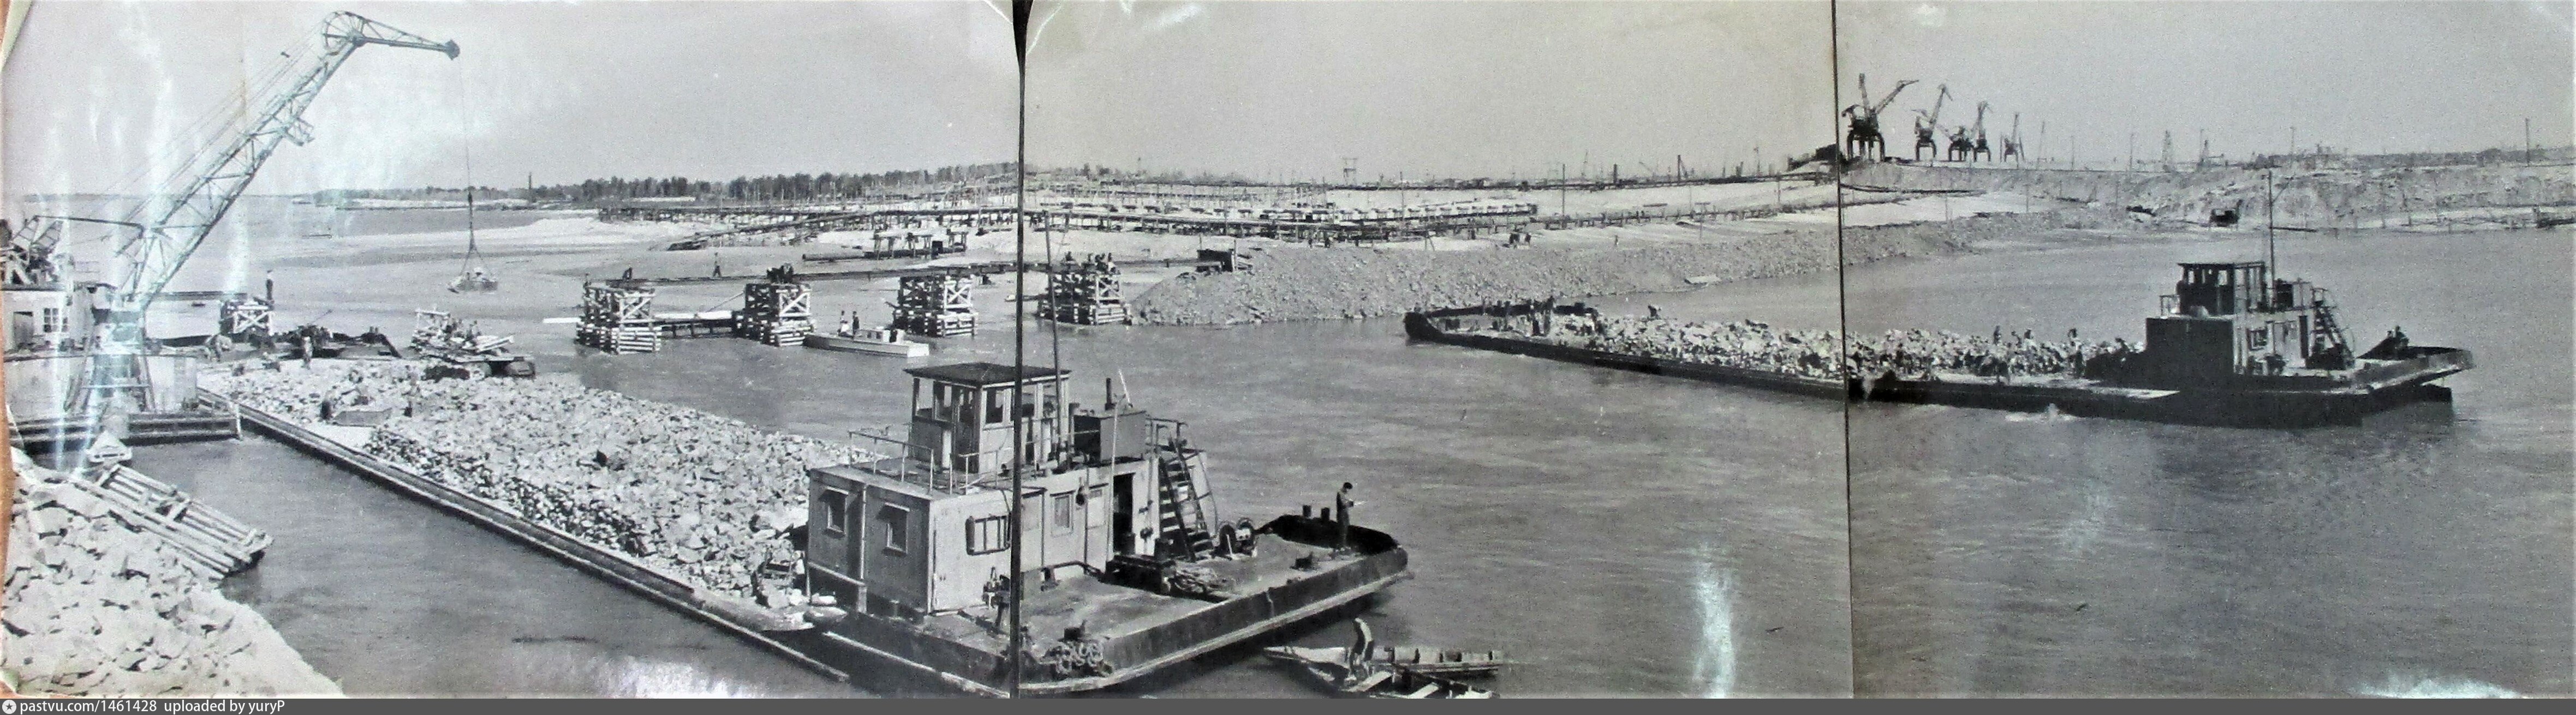 Стройка Волго-Донской канал 1950